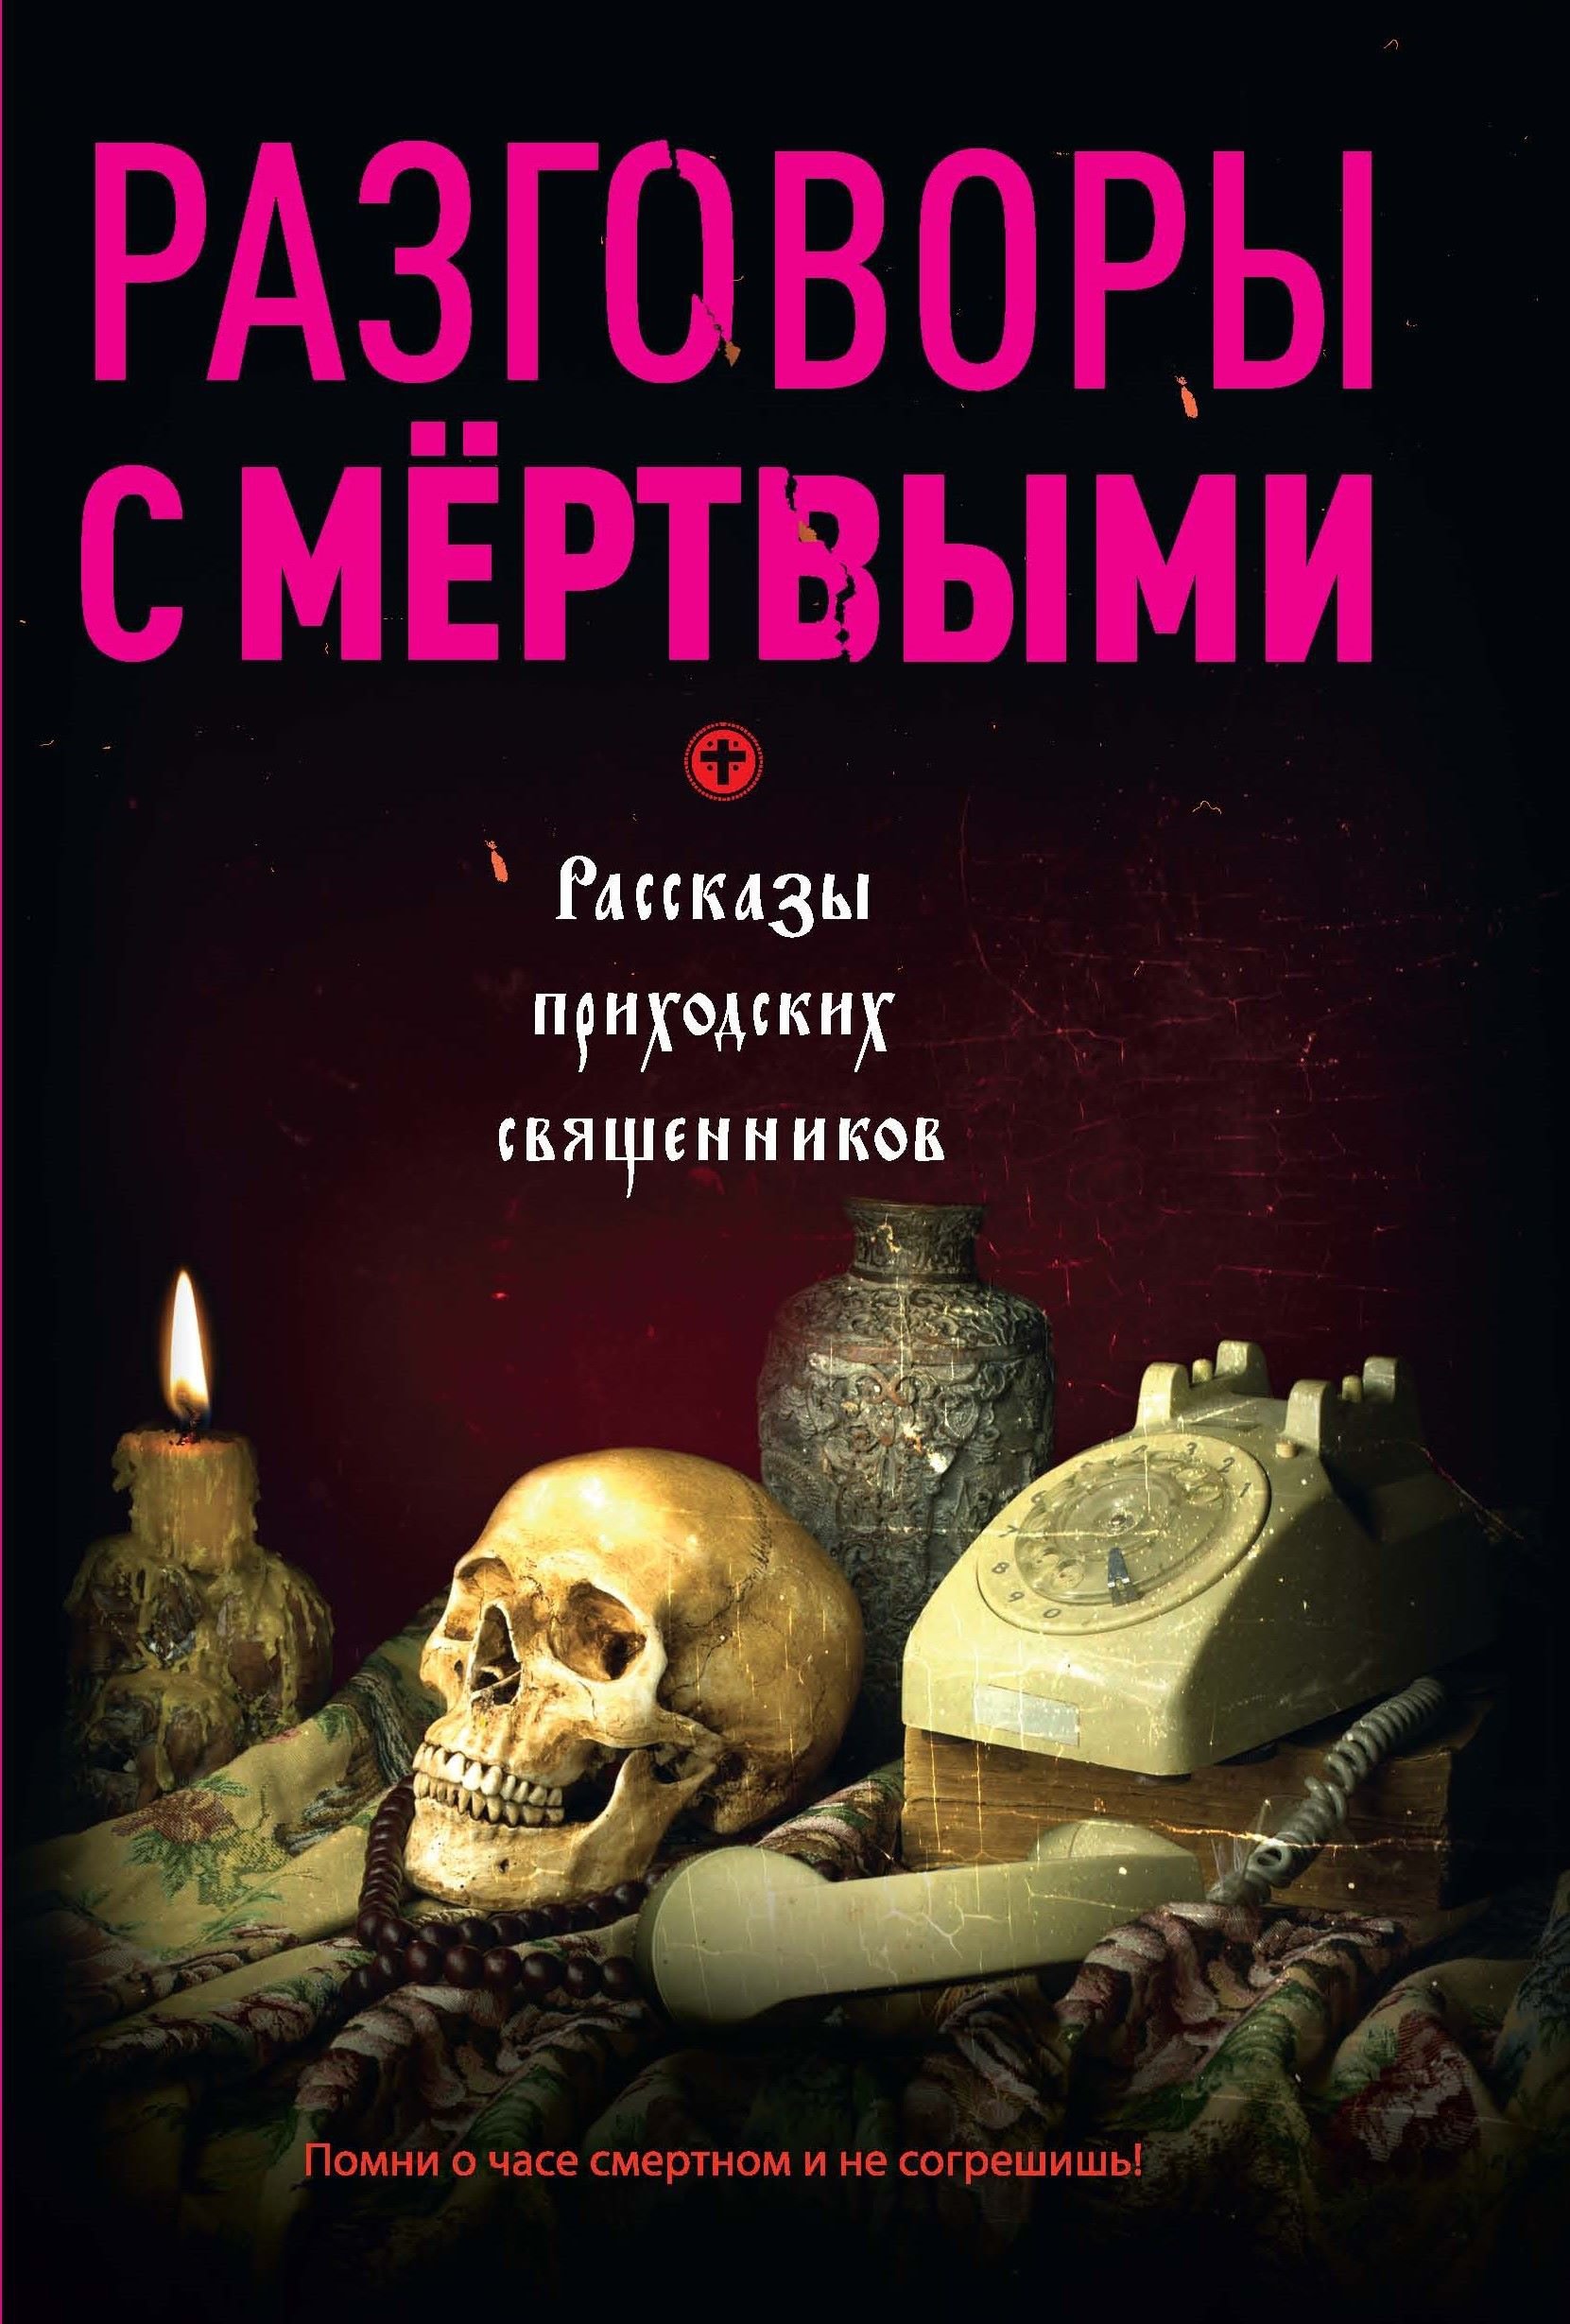 Книга мертвых история